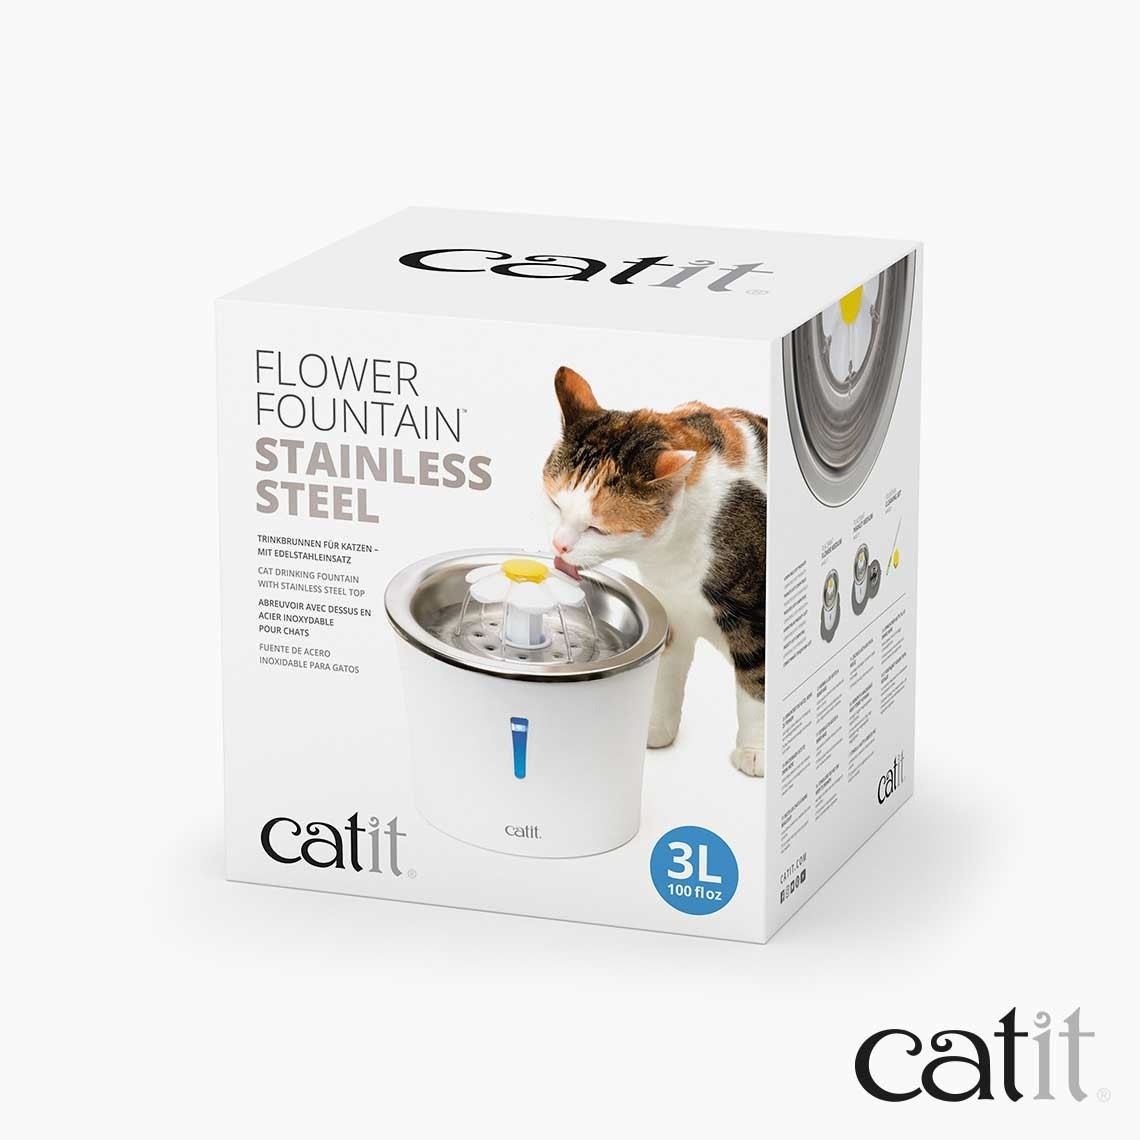 Catit Flower - 3L - fuente de acero inoxidable para perros y gatos